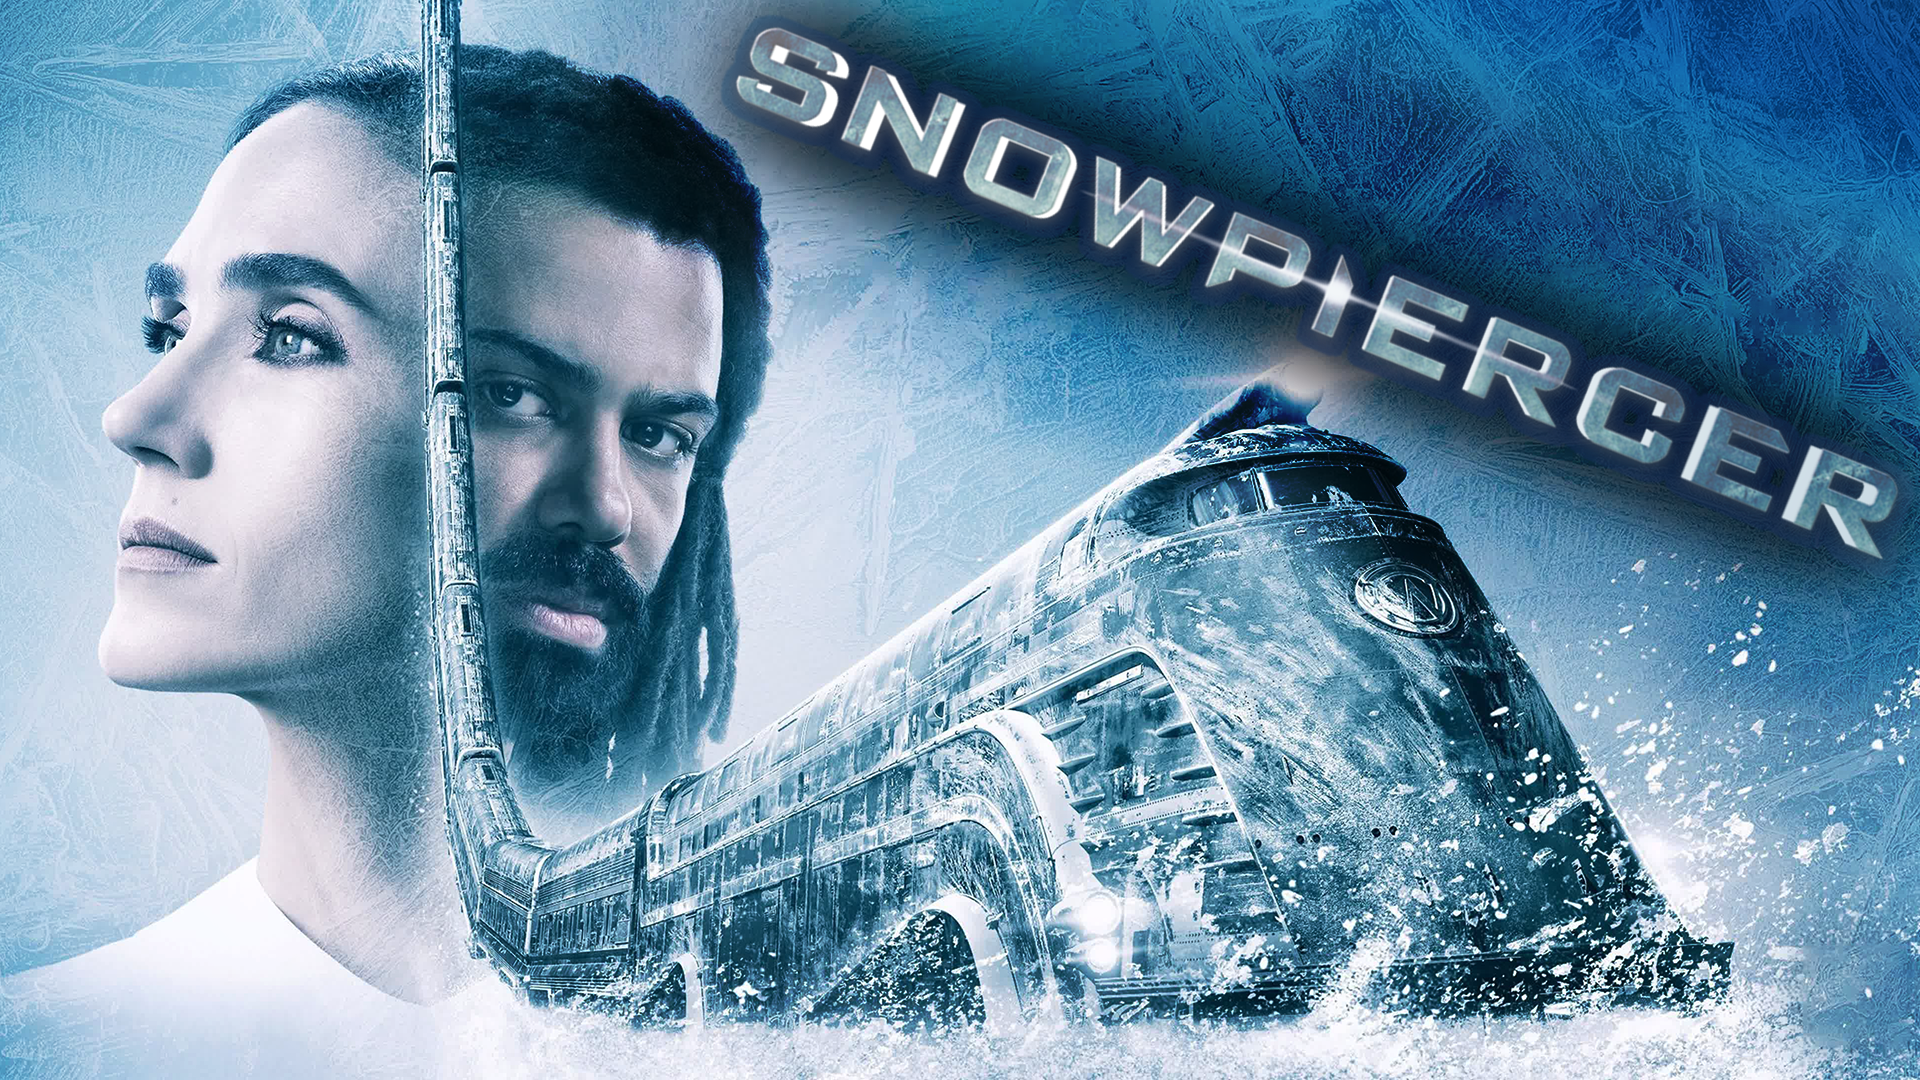 Сквозь снег – 2 сезон 10 серия / Snowpiercer